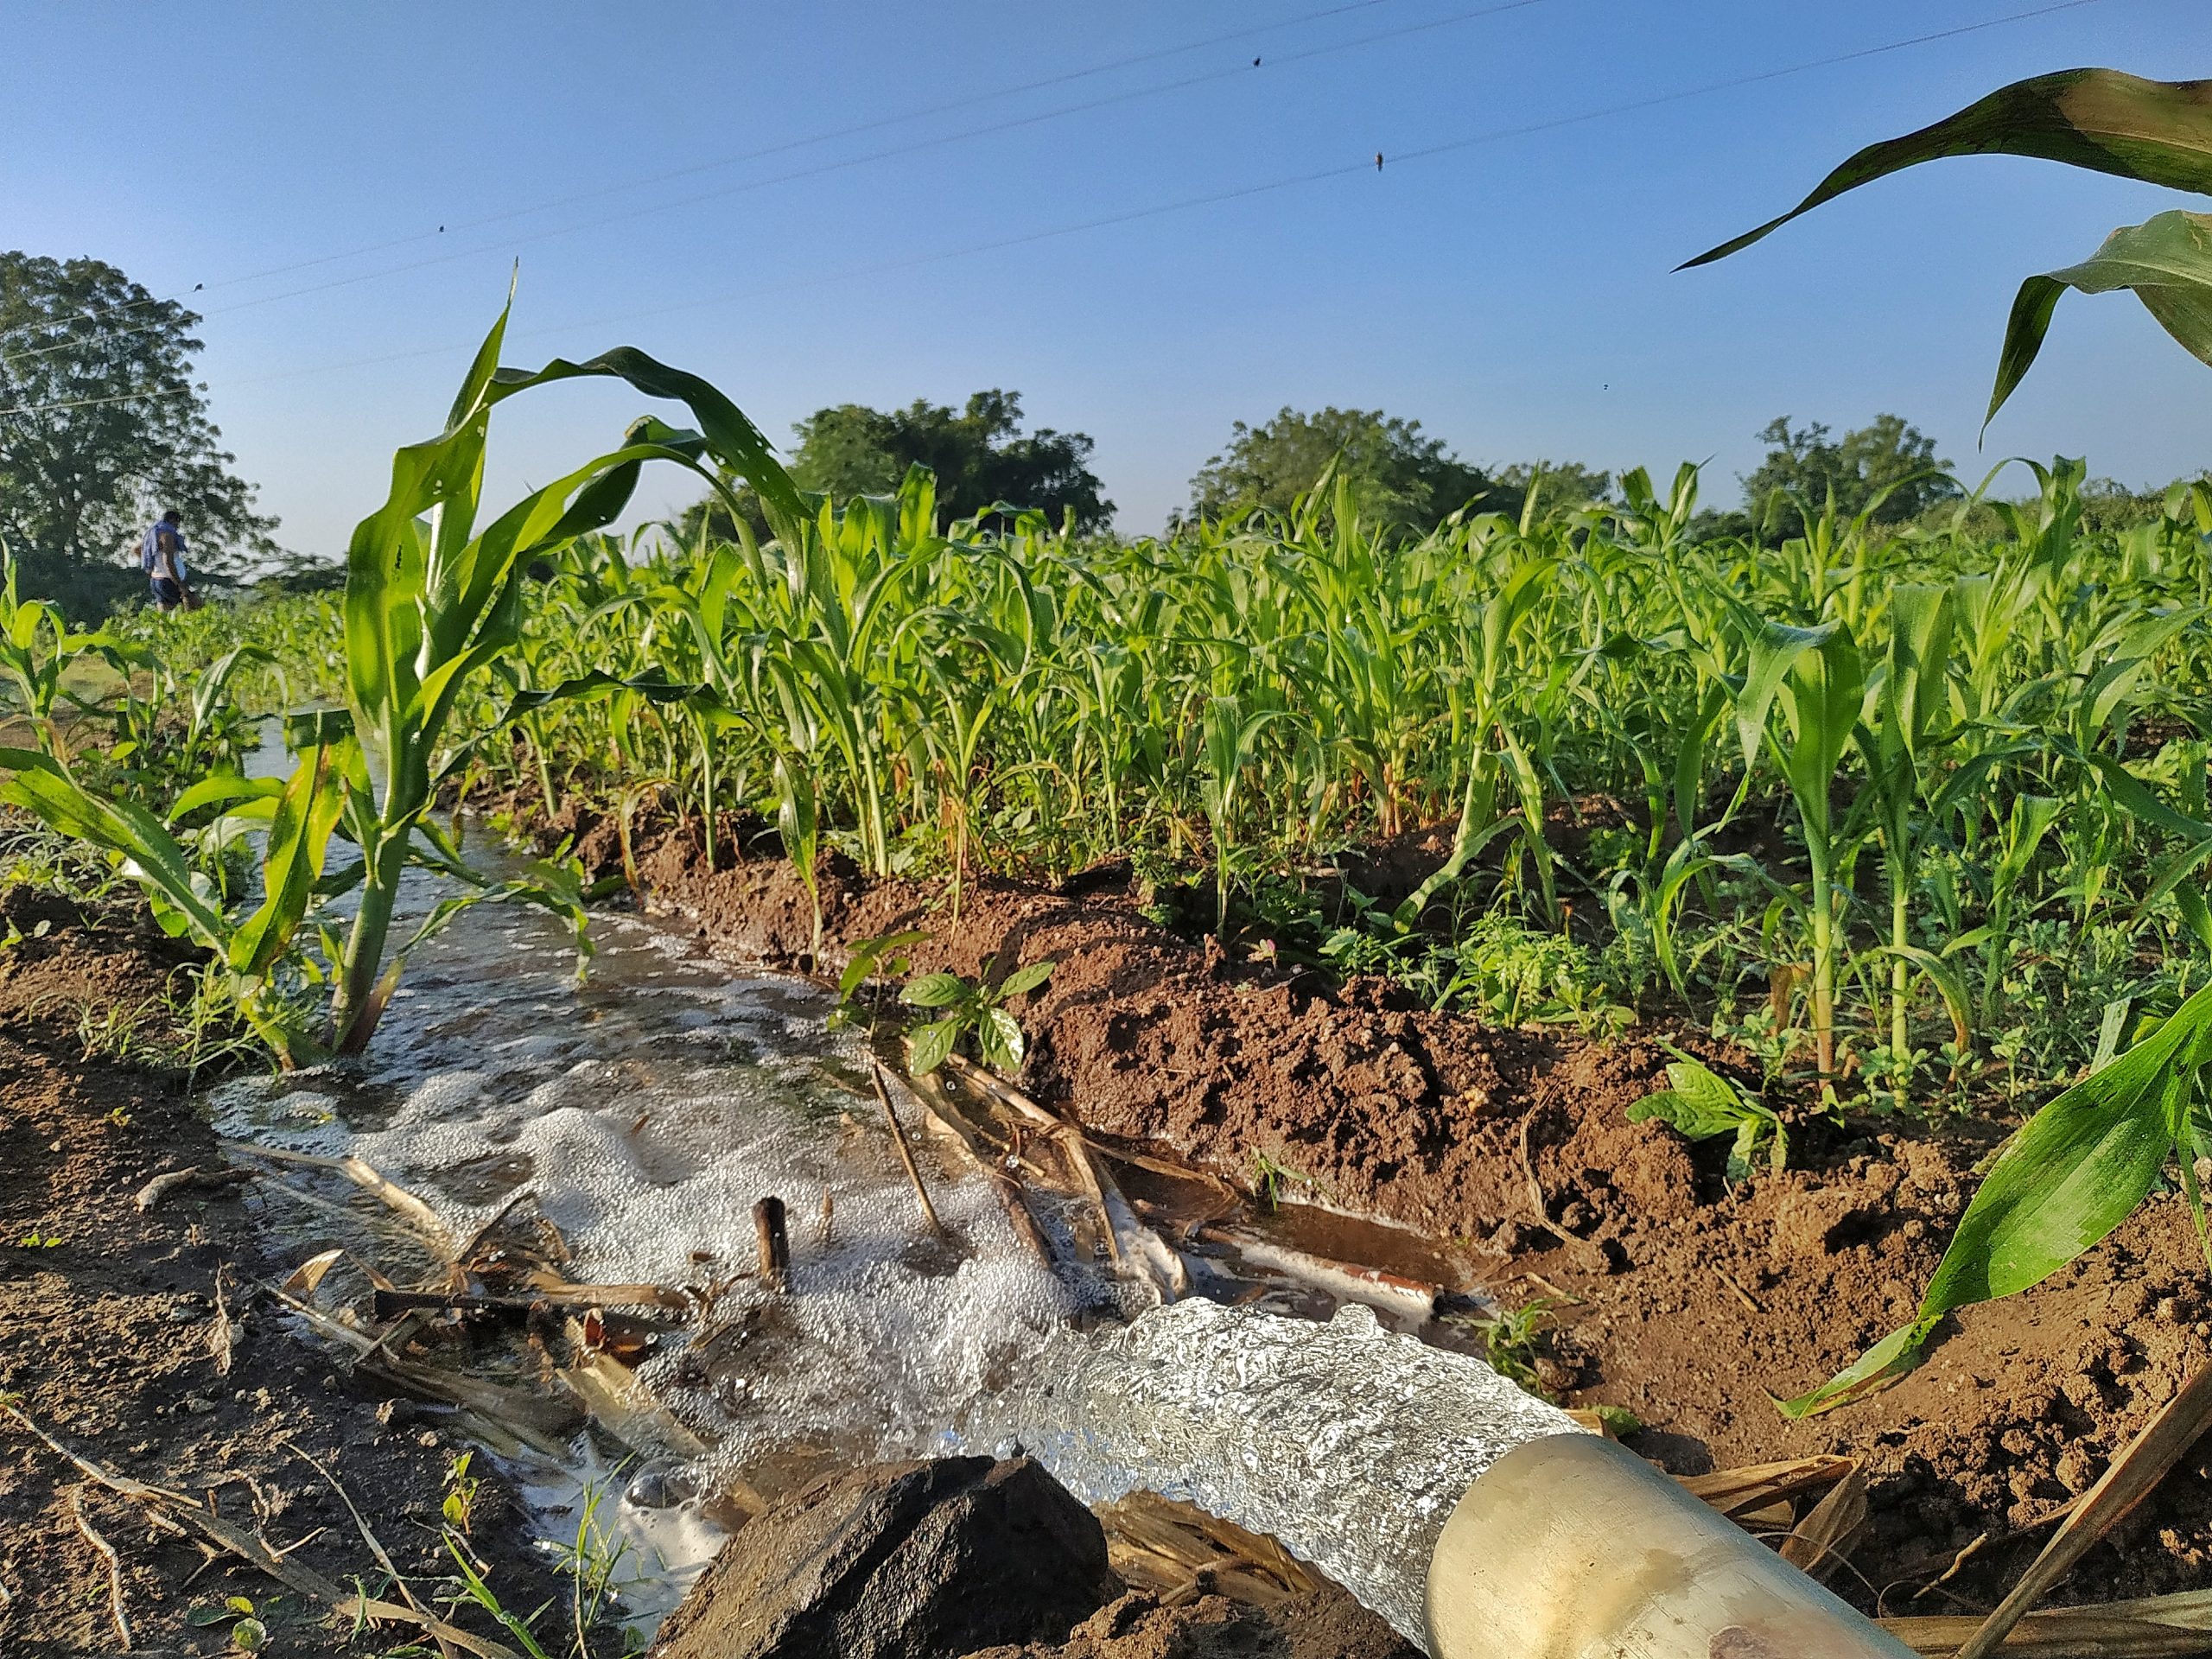 A water canal in corn fields